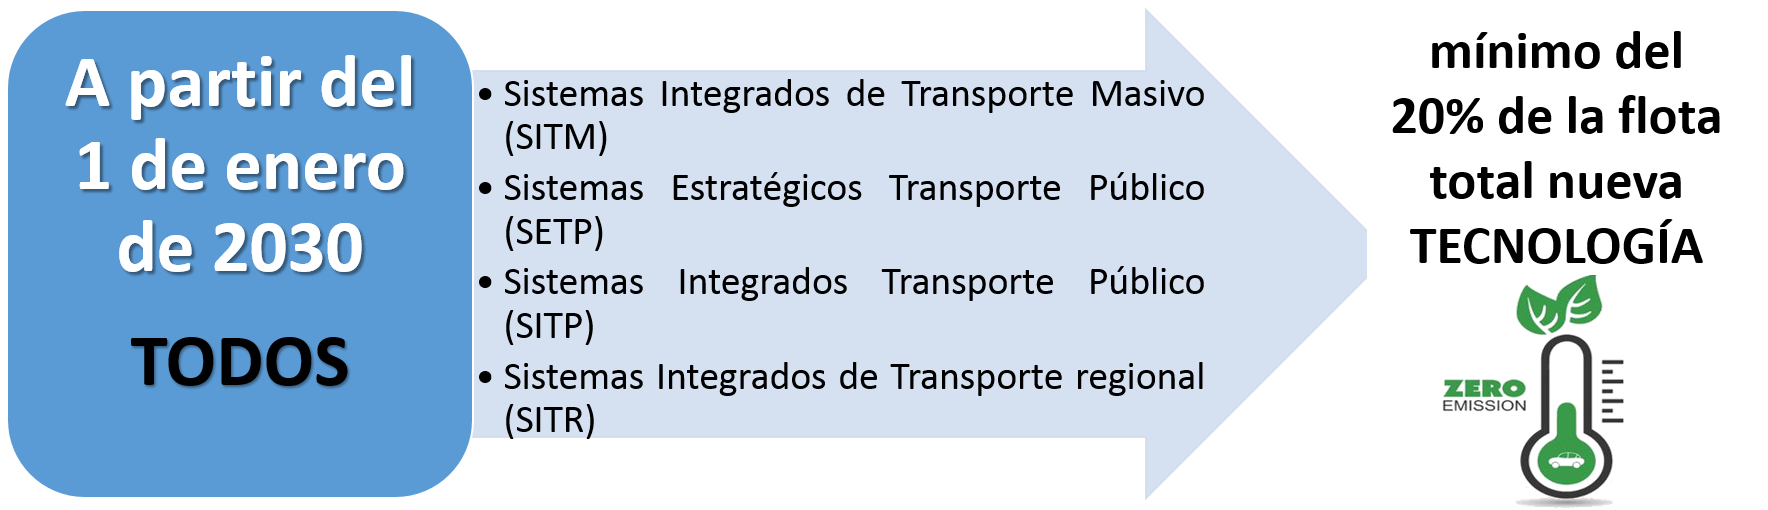 A partir del 1 de enero de 2030: ministerio de transporte, minimo del 20% de la flota total nueva tecnologia